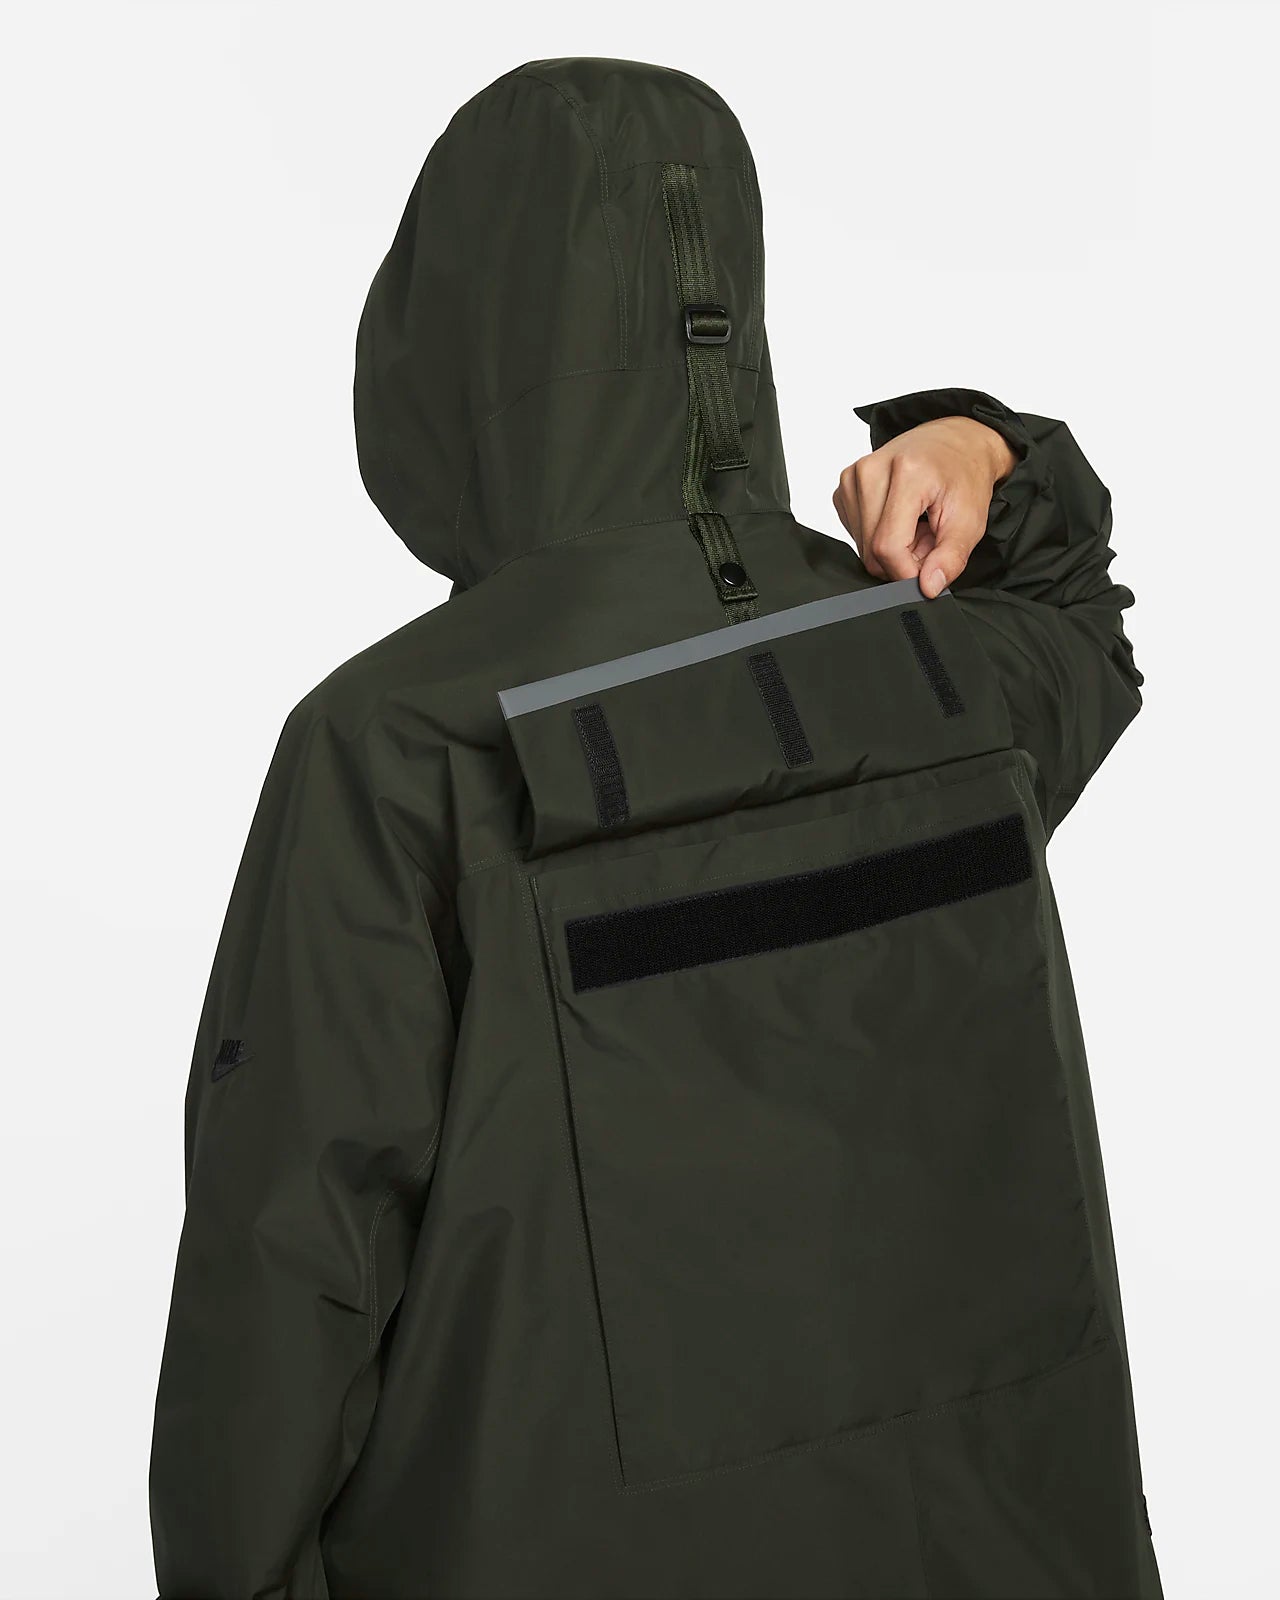 Nike Sportswear GORE-TEX Hooded Jacket